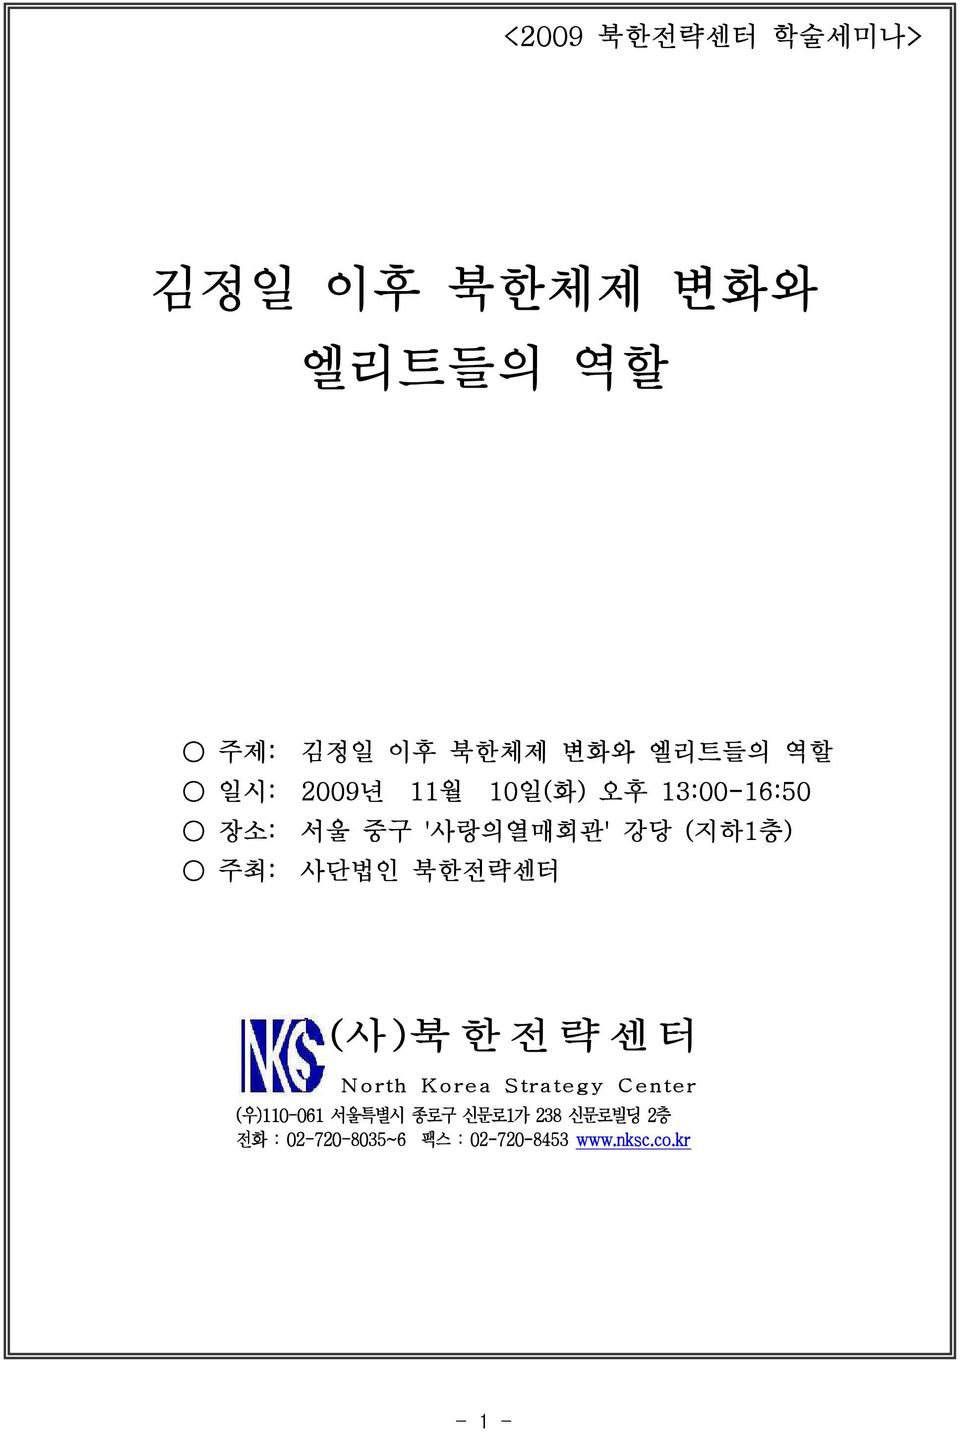 북한전략센터 (사 )북 한 전 략 센 터 N orth K orea Strategy Center (우)110-061 서울특별시 종로구